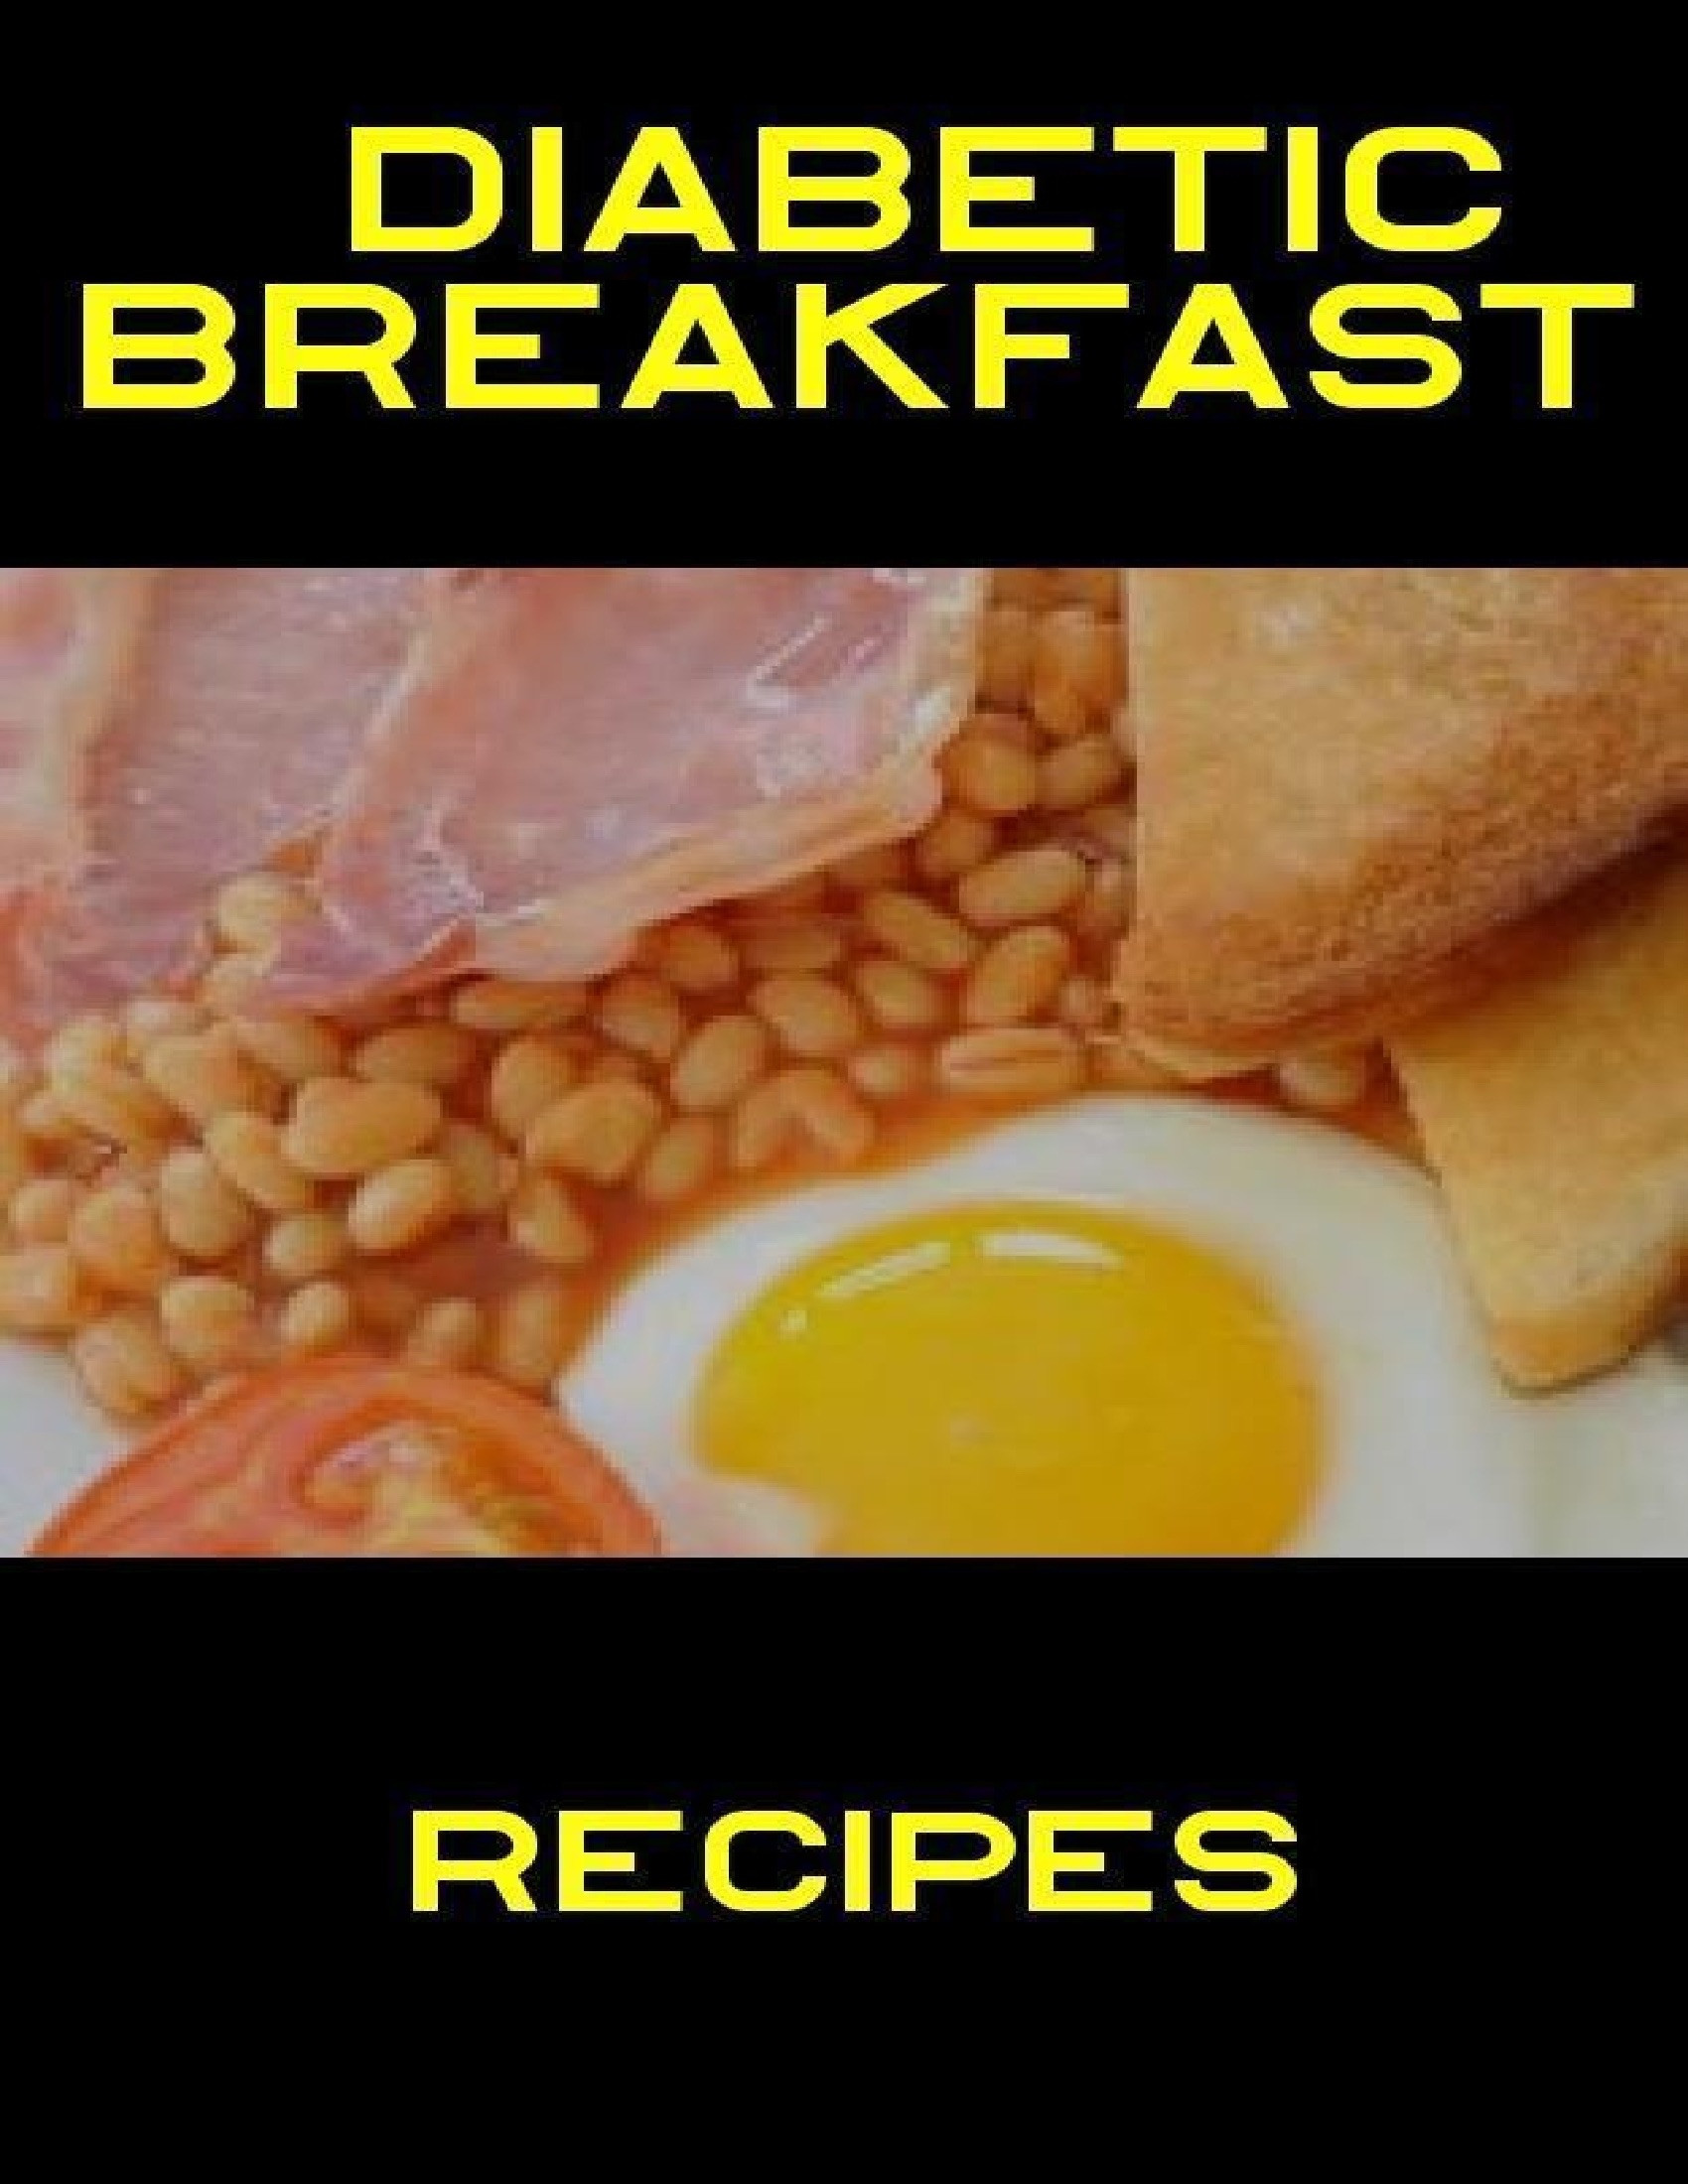 Diabetes Recipes Breakfast
 Diabetic Breakfast Recipes by Jenny Brown on iBooks